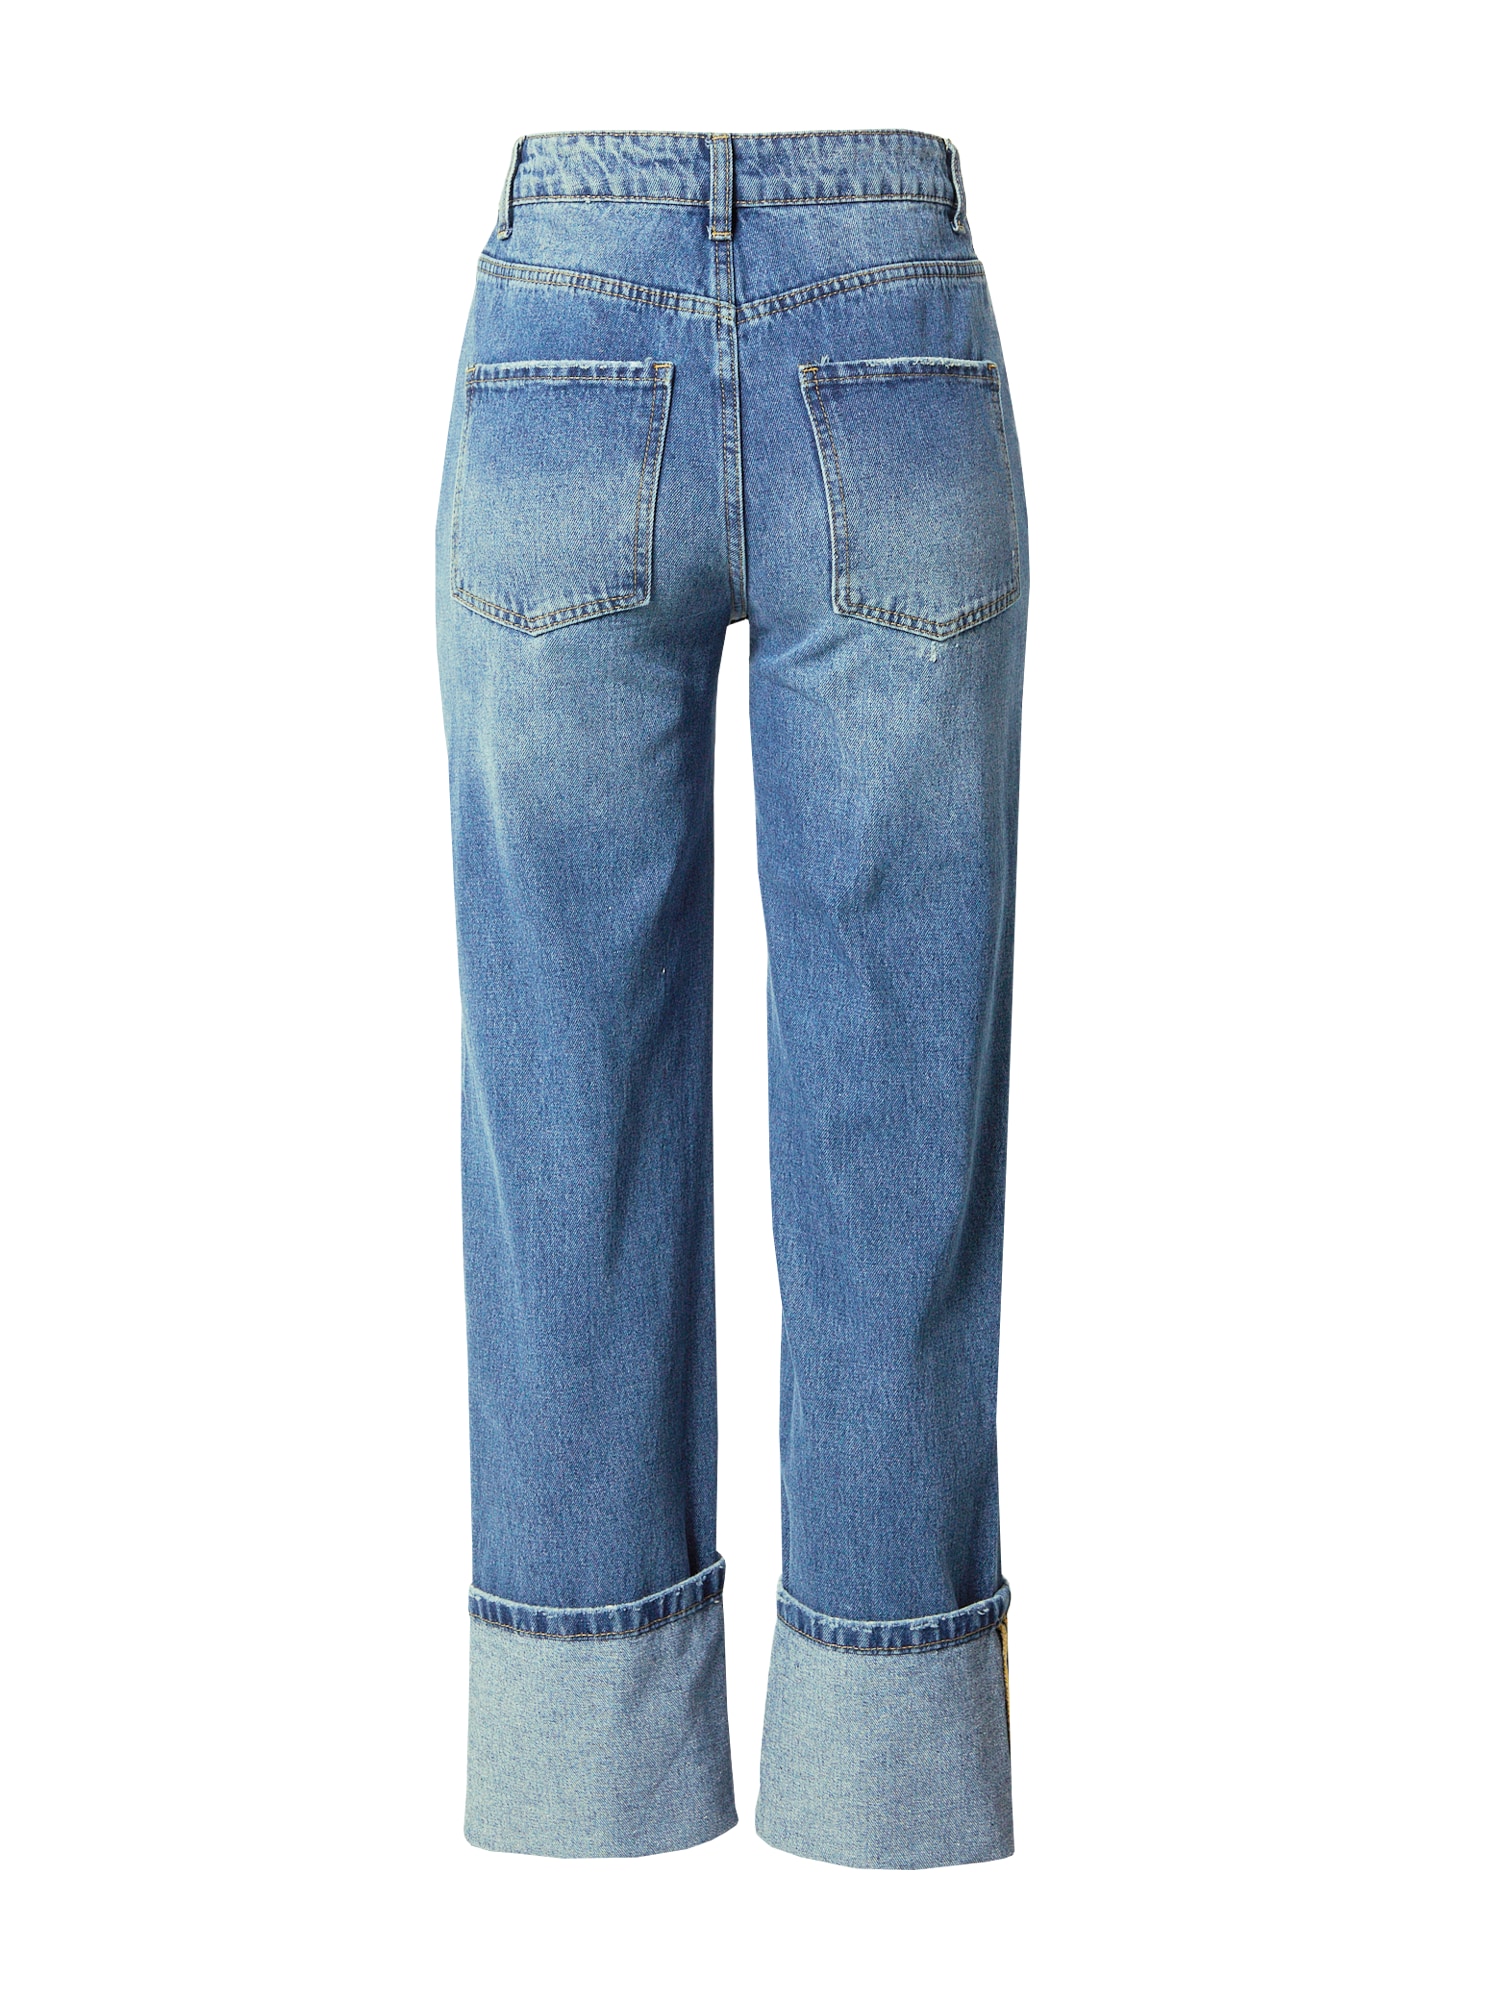 Jeans von Warehouse